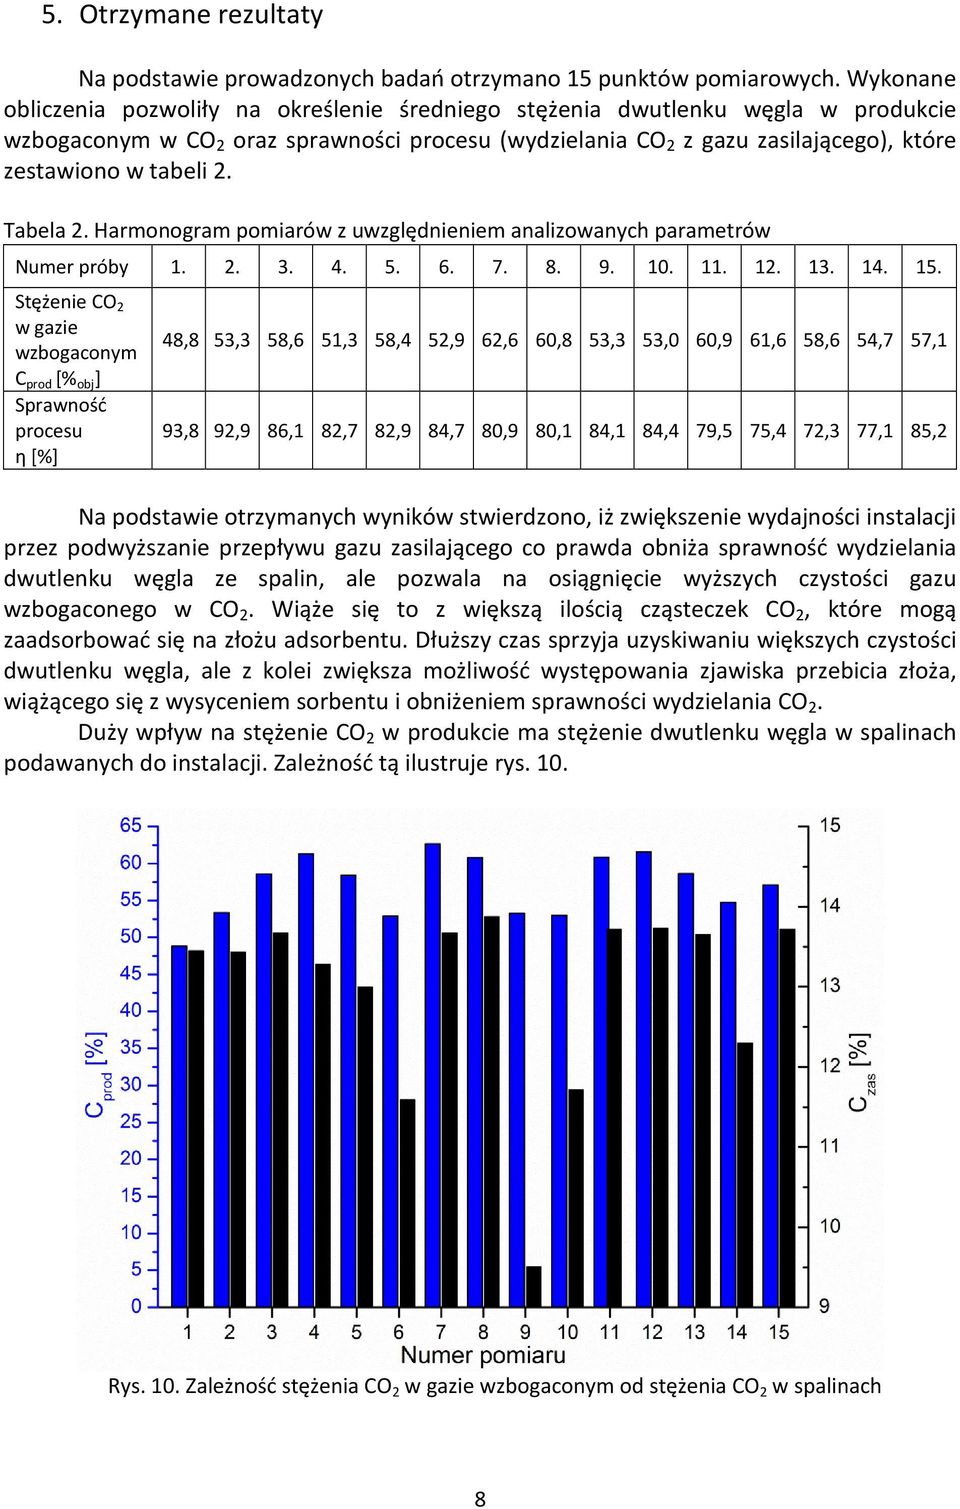 2. Tabela 2. Harmonogram pomiarów z uwzględnieniem analizowanych parametrów Numer próby 1. 2. 3. 4. 5. 6. 7. 8. 9. 10. 11. 12. 13. 14. 15.